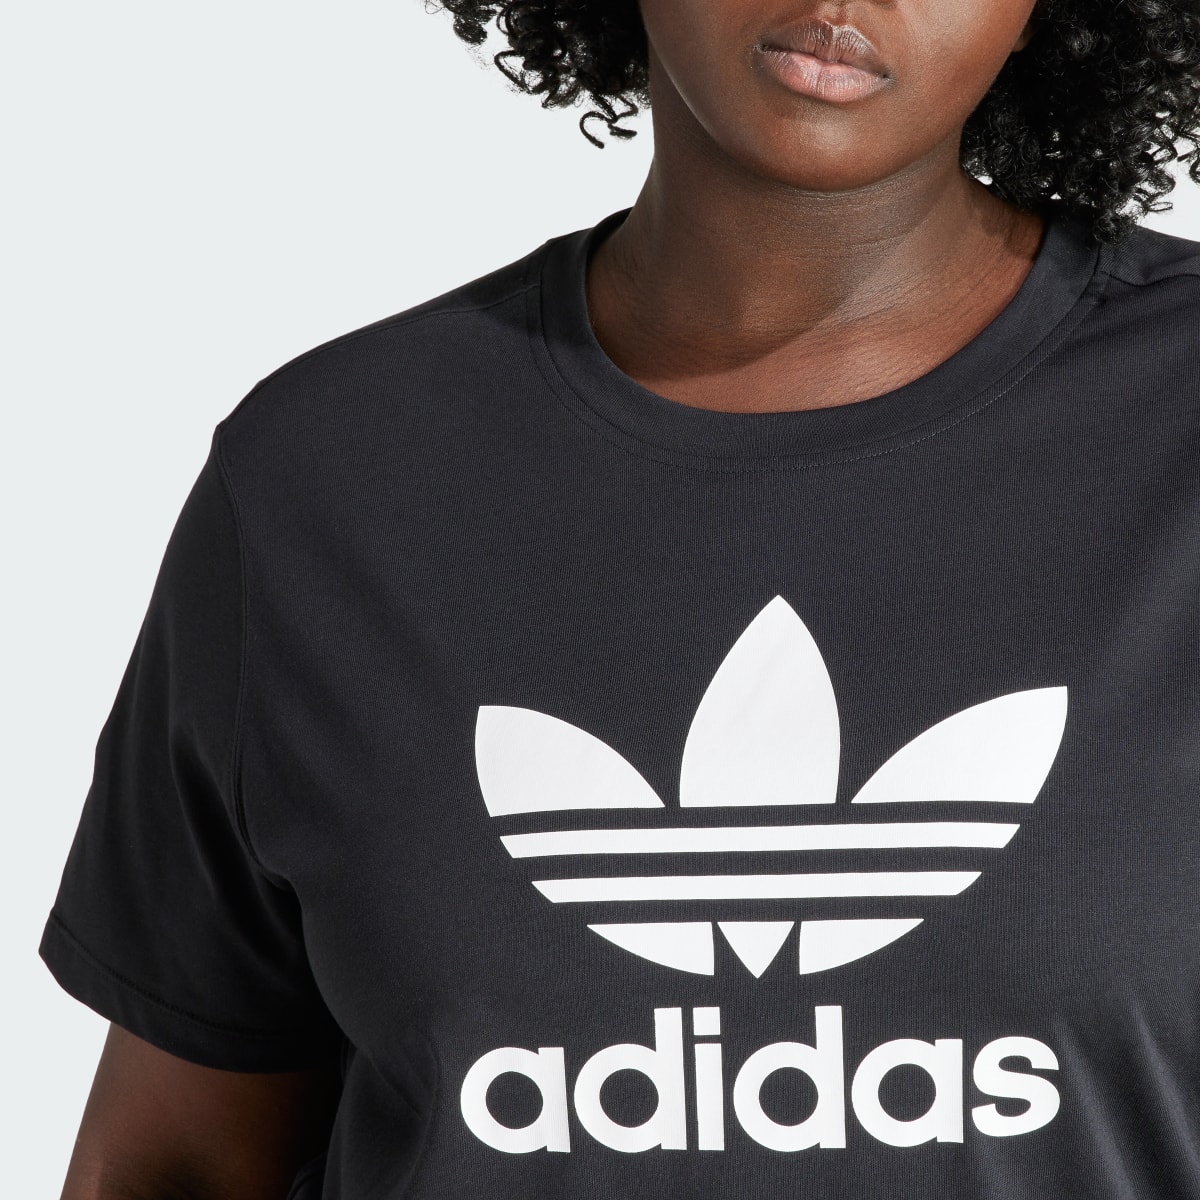 Adidas T-shirt Quadrada Trefoil Adicolor (Plus Size). 5